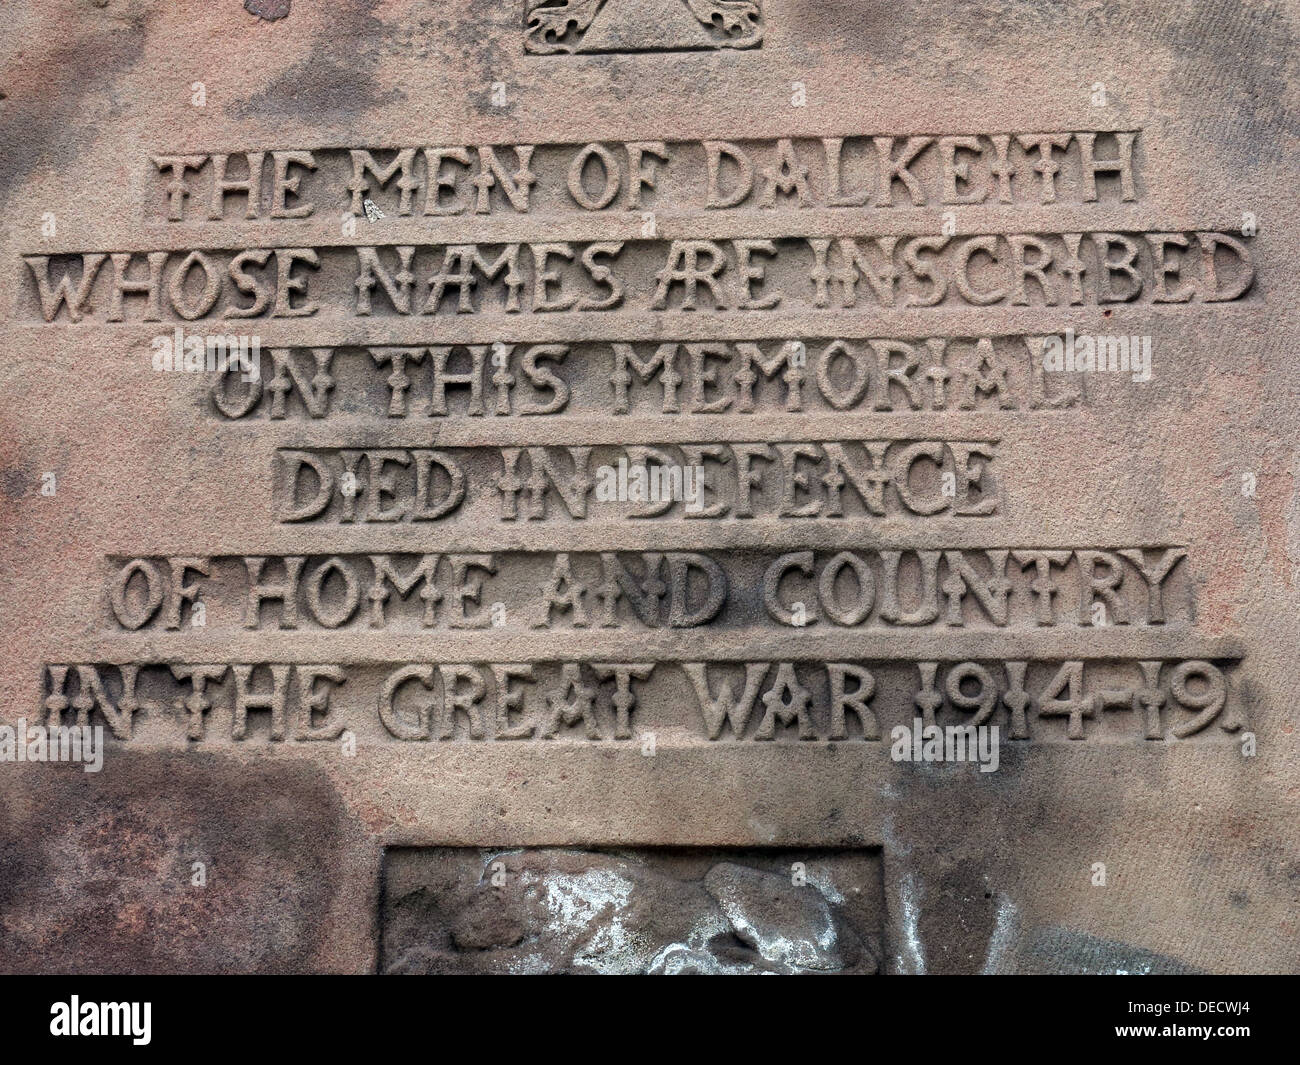 Inscriptions sur Ecully War Memorial 1914-19, Midlothian, Ecosse, Royaume-Uni Banque D'Images